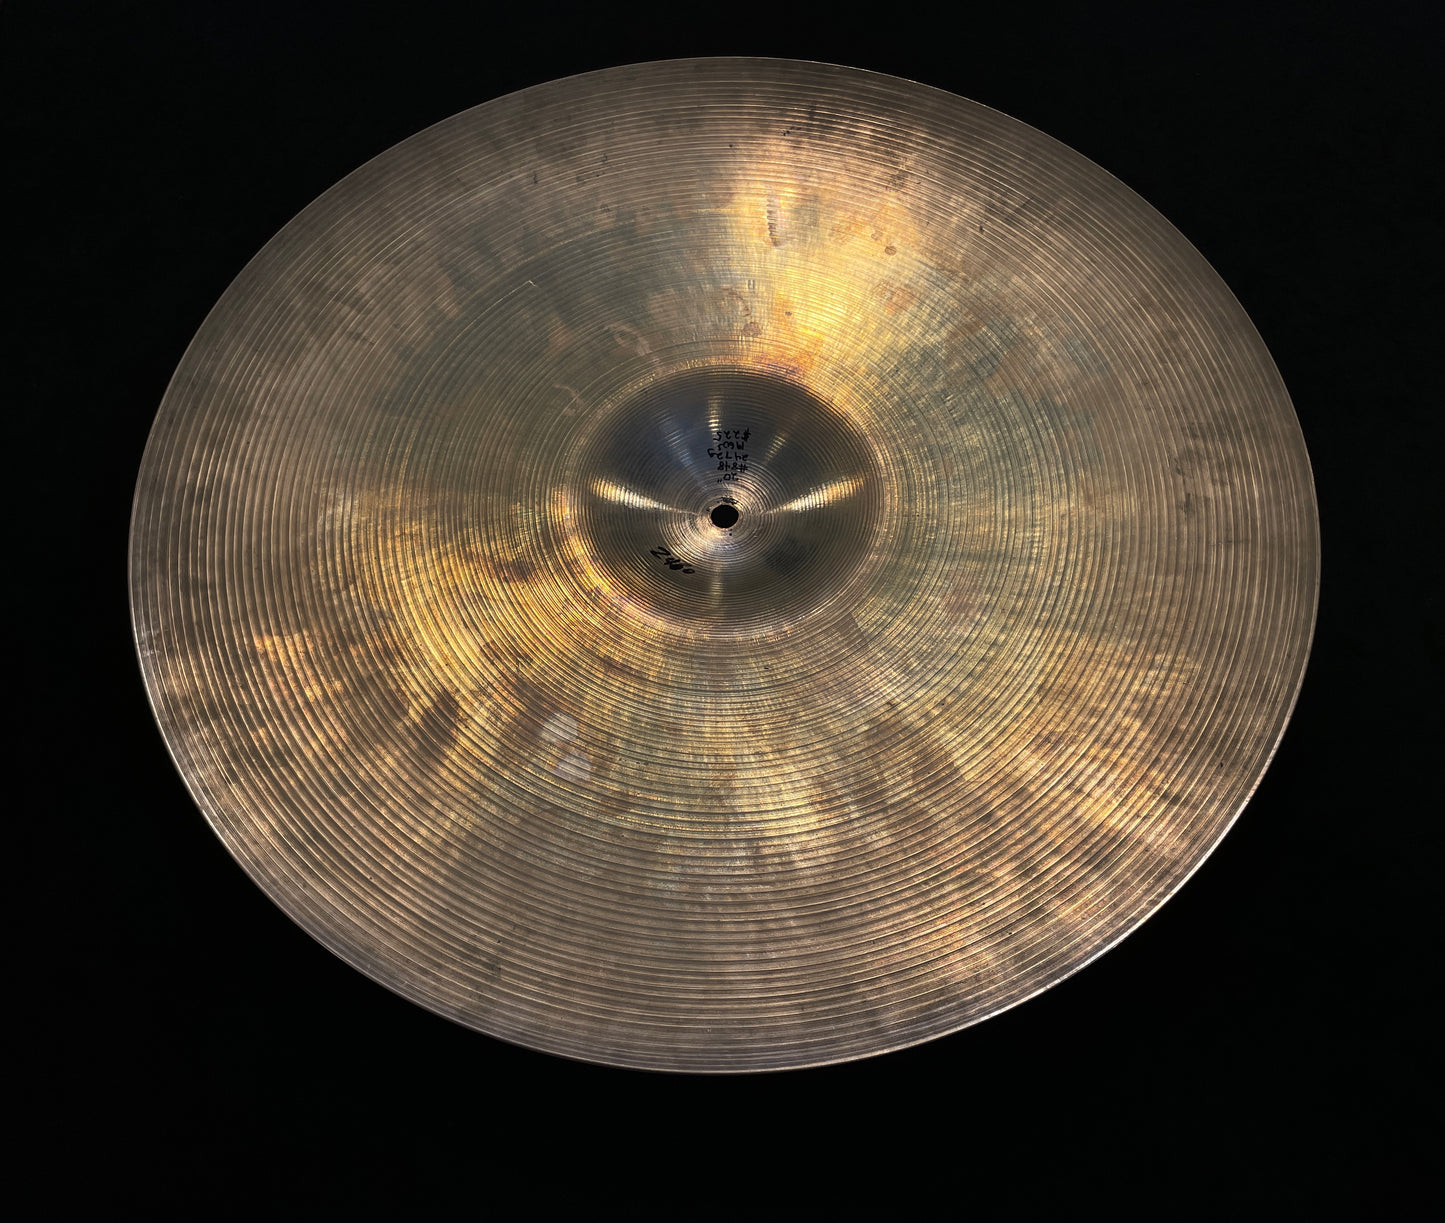 20" Zildjian A 1960s Ride Cymbal 2472g #848 *Video Demo*